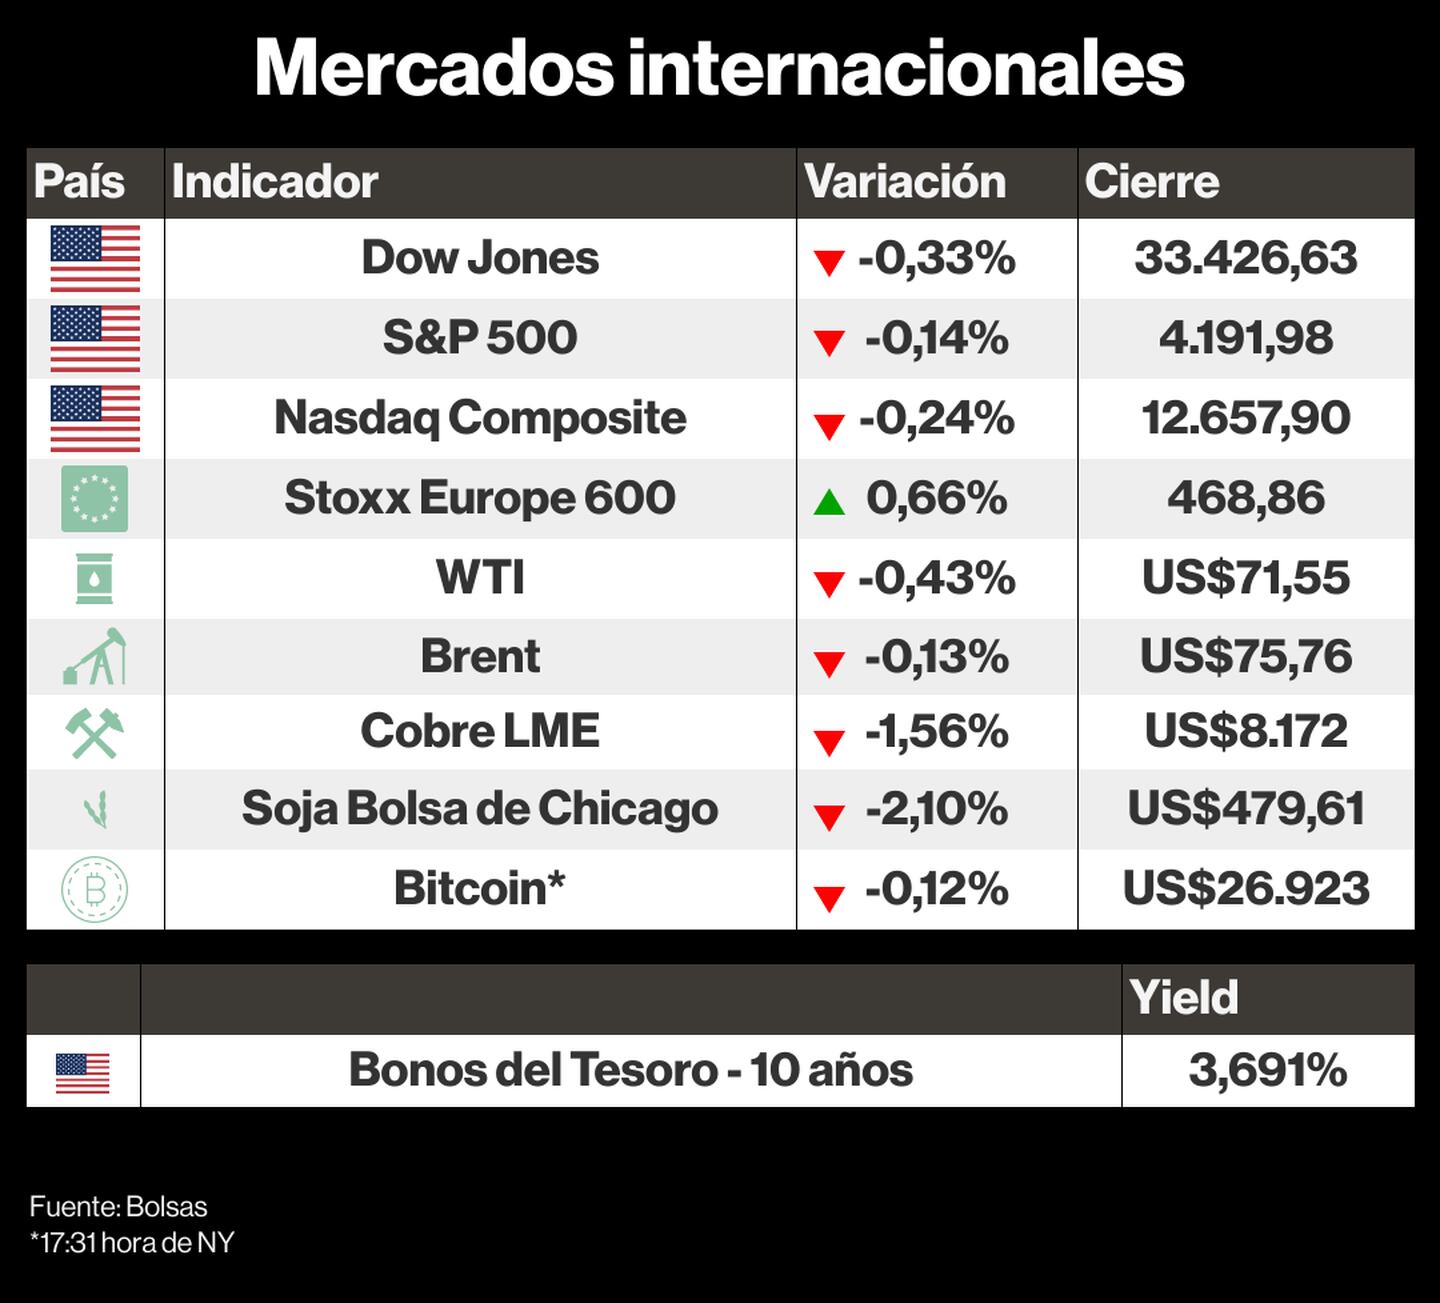 Mercados internacionales.dfd